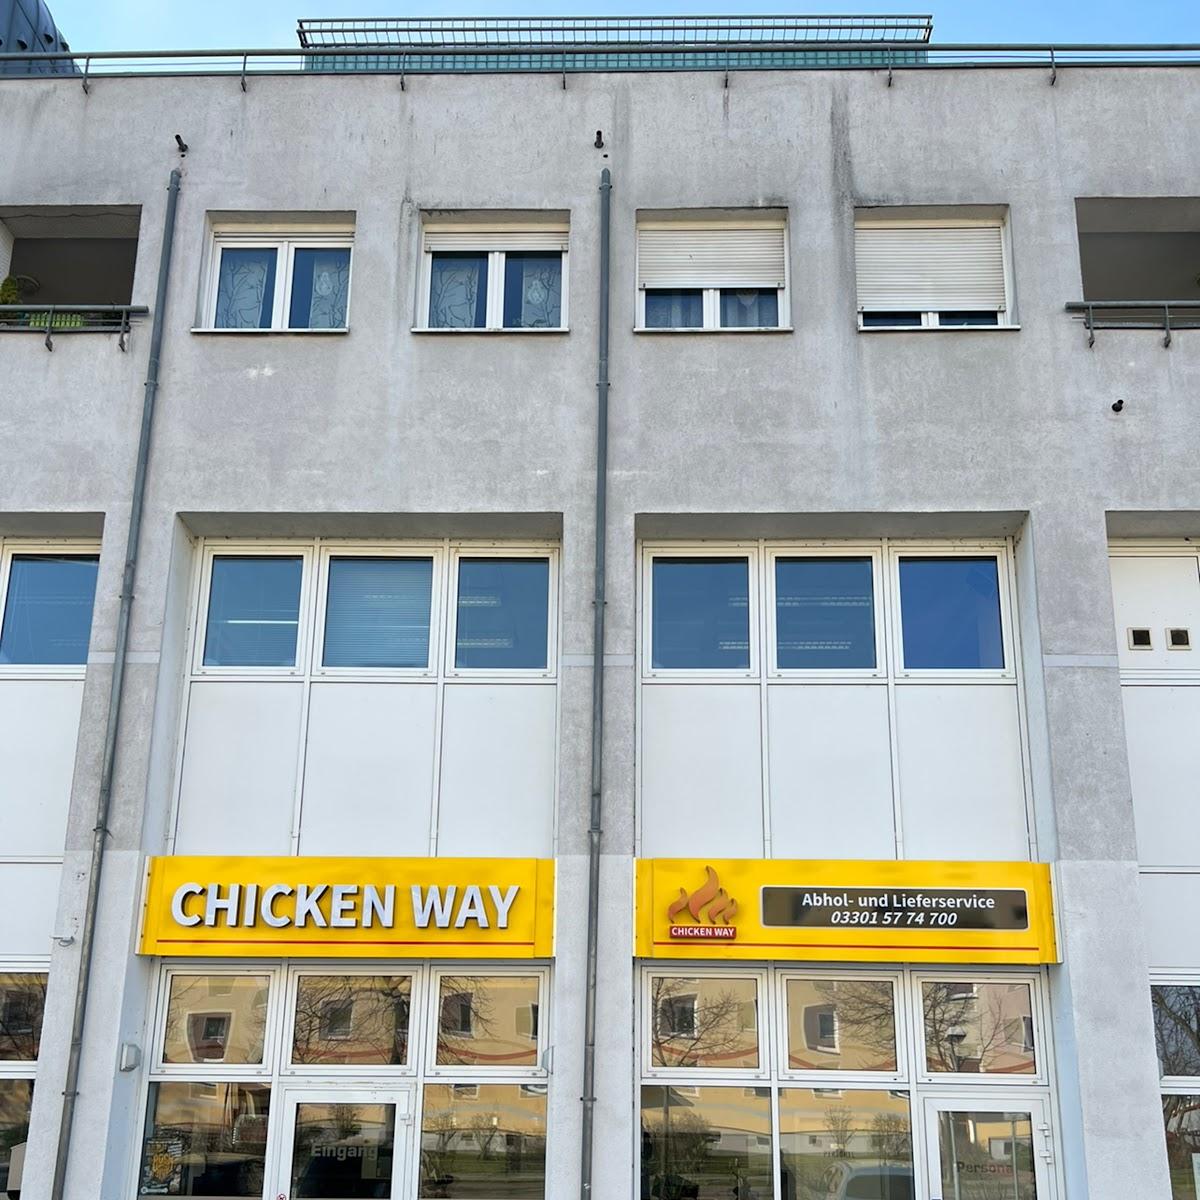 Restaurant "Chicken Way" in Oranienburg